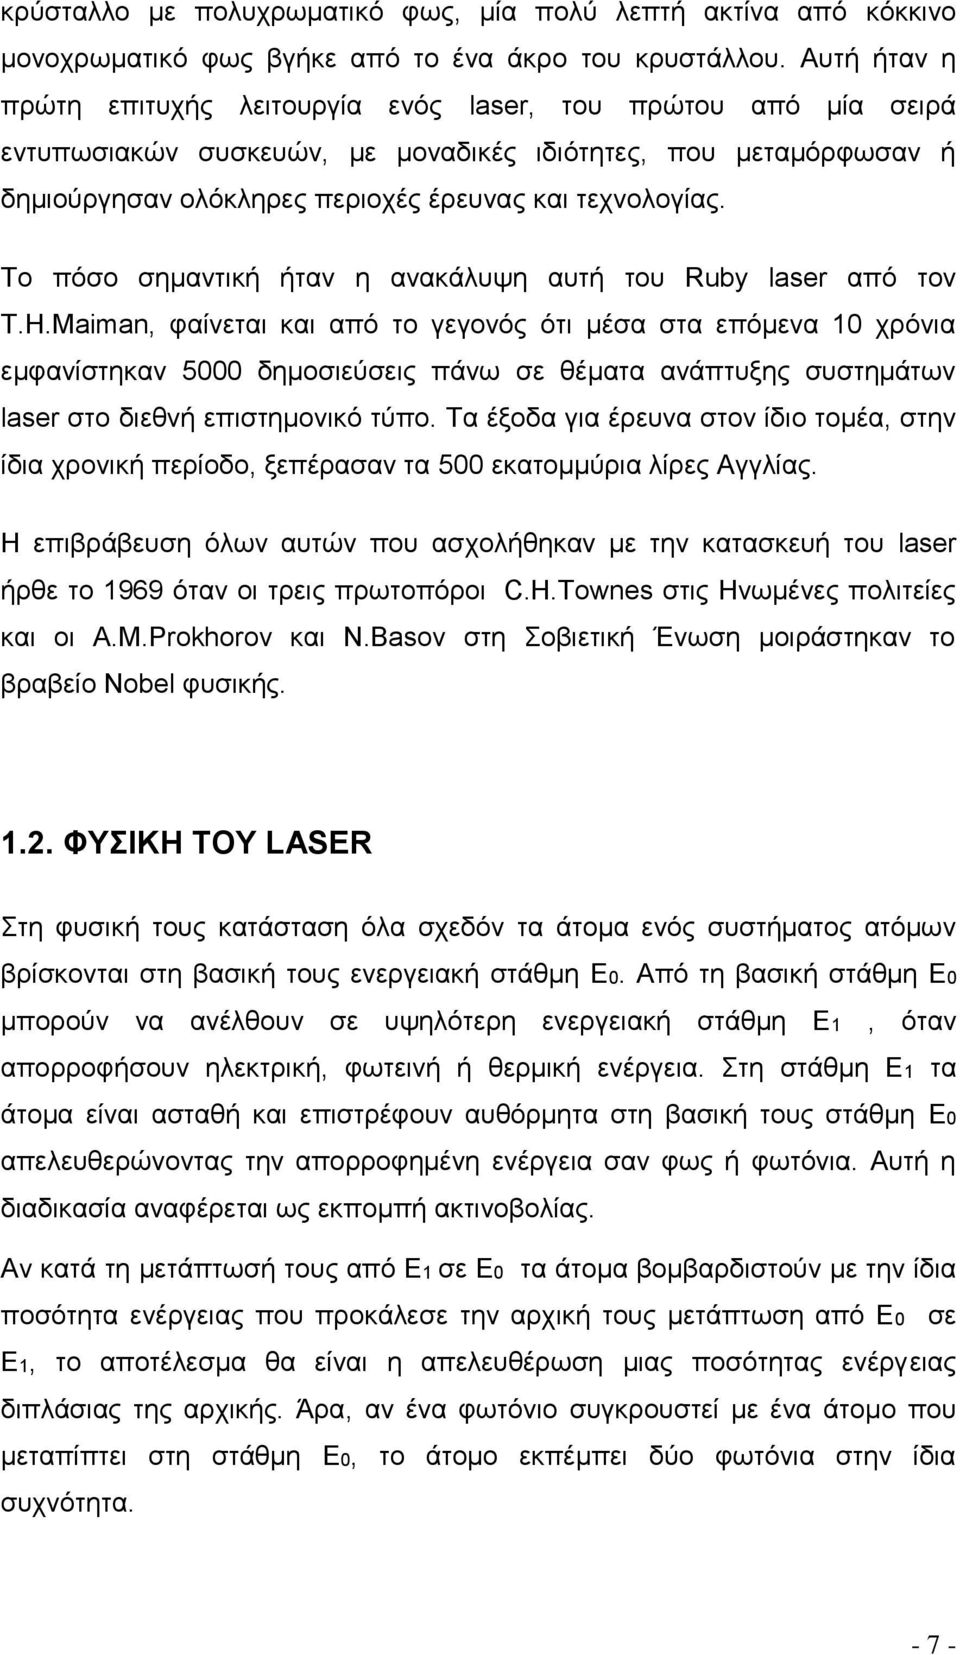 Το πόσο σημαντική ήταν η ανακάλυψη αυτή του Ruby laser από τον T.H.